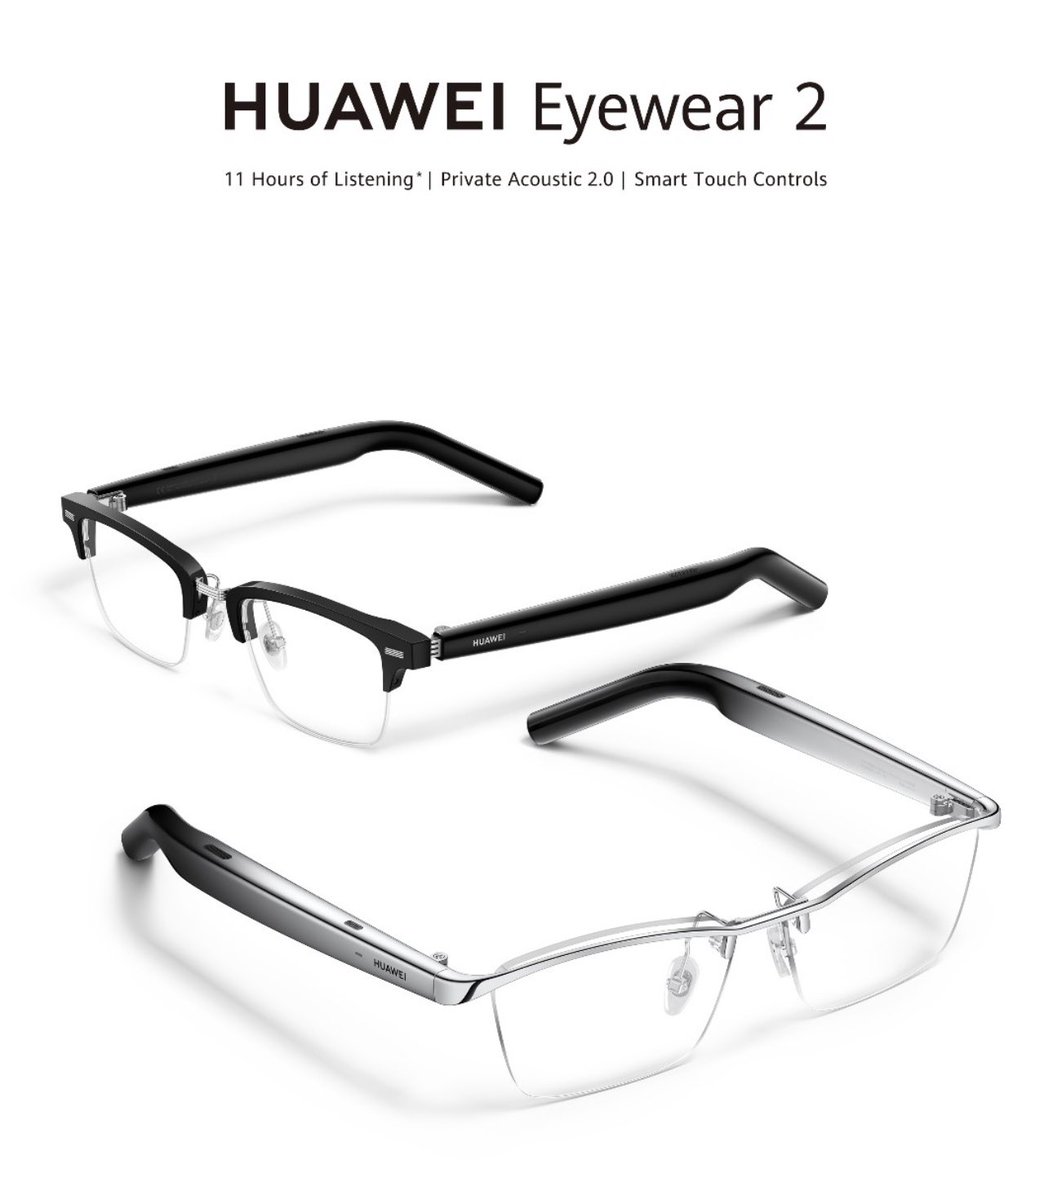 ファーウェイは、新しいオーディオグラス「HUAWEI Eyewear2」を発表しました。

バッテリー持続時間が音楽再生時11時間と、前モデルの6時間から大幅に向上したモデル。通話時は9時間と、こちらも前モデルの4.5時間から大幅に向上しています。

また、IP54の防水規格にも対応します。 #HUAWEIEyewear2